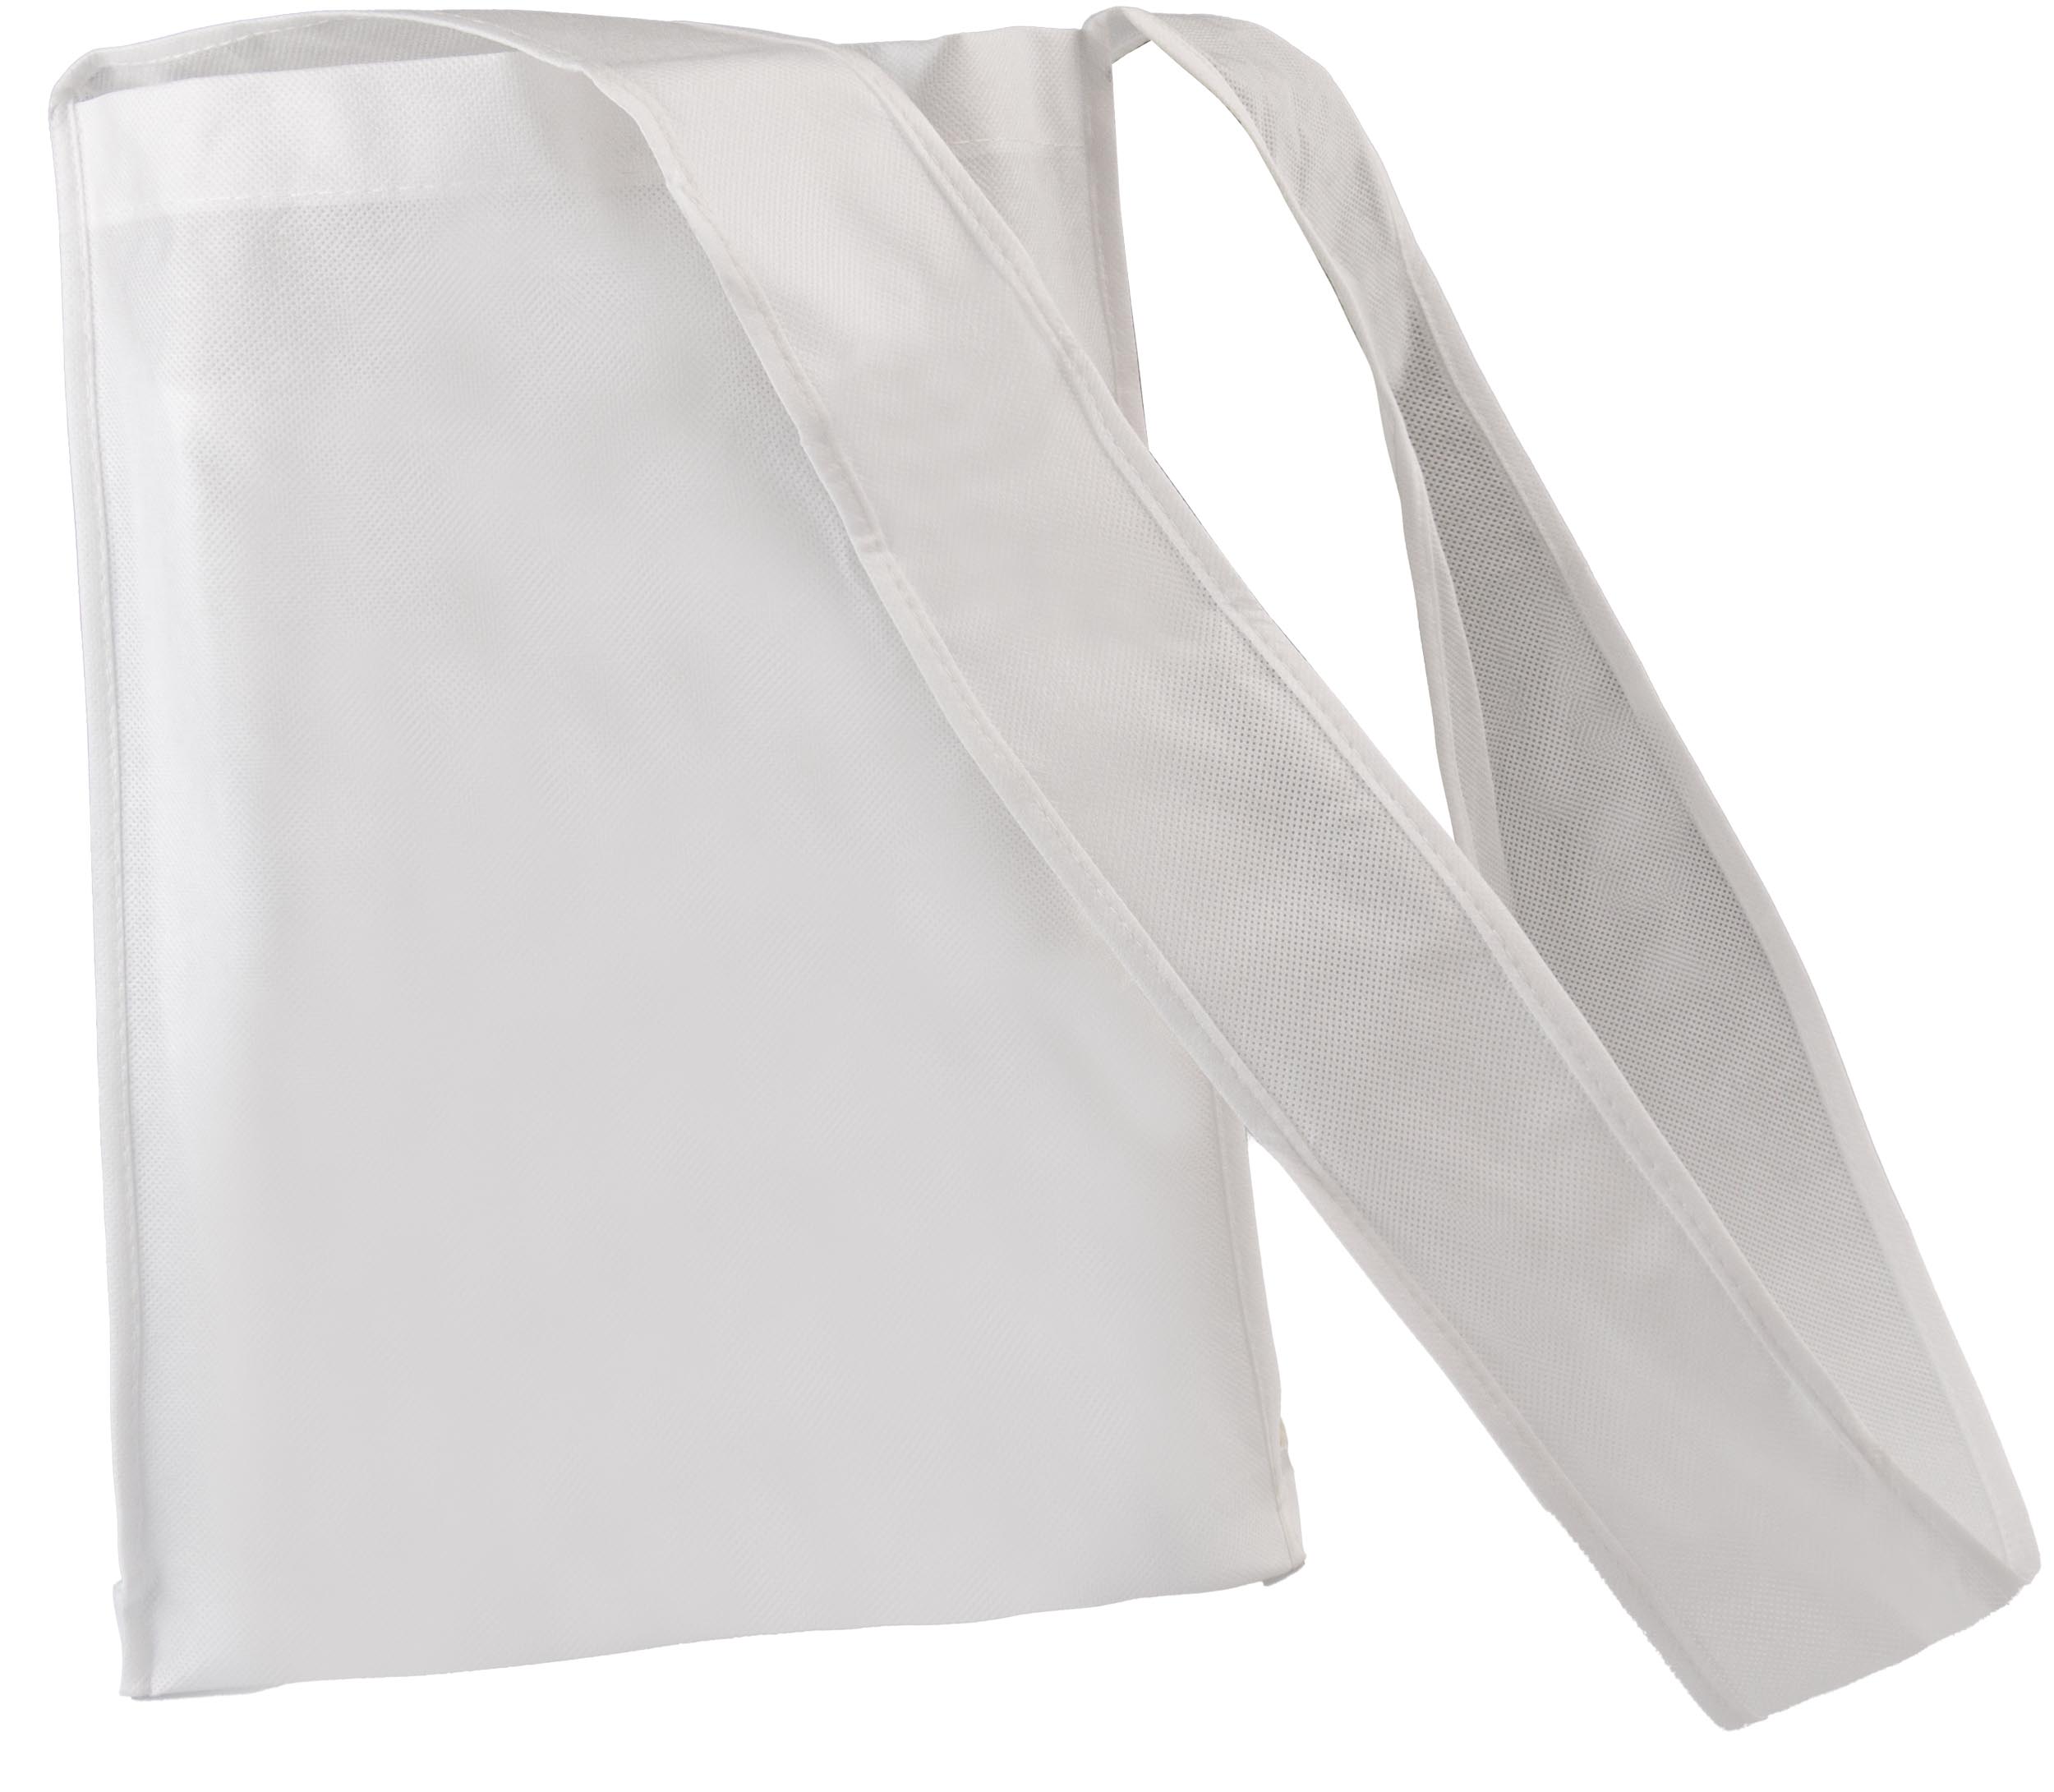 Taška Shoulder Bag White